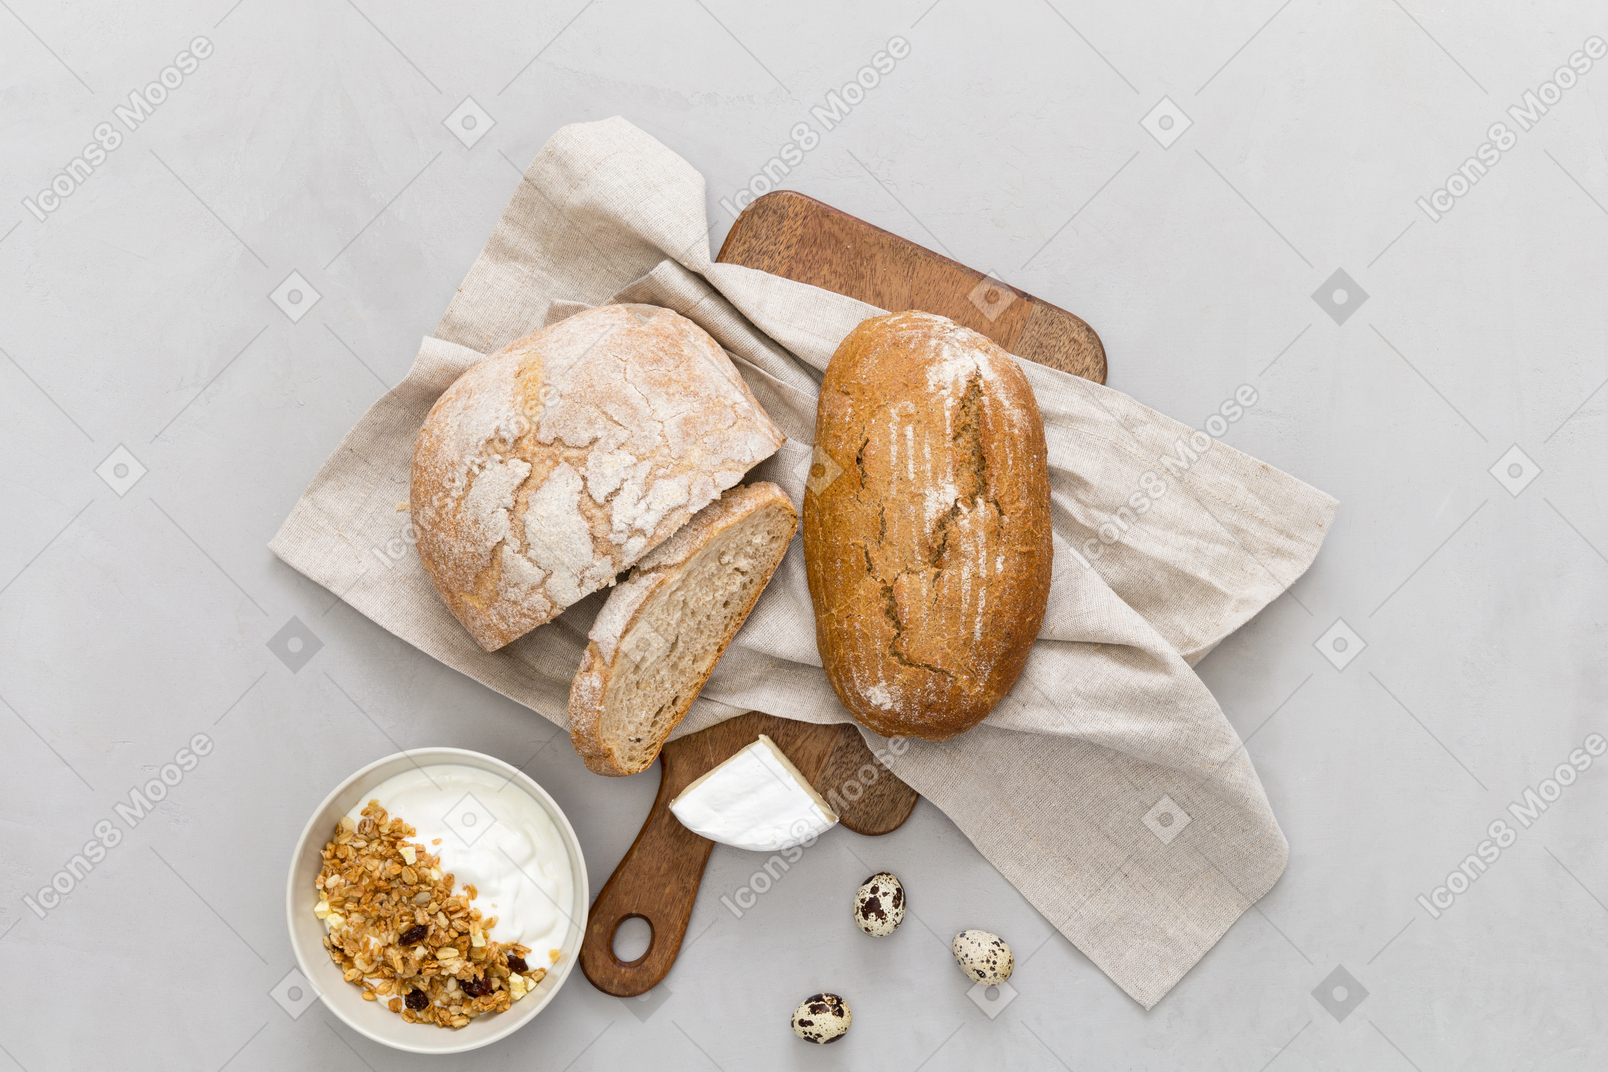 Хлеб, крупы и яйца